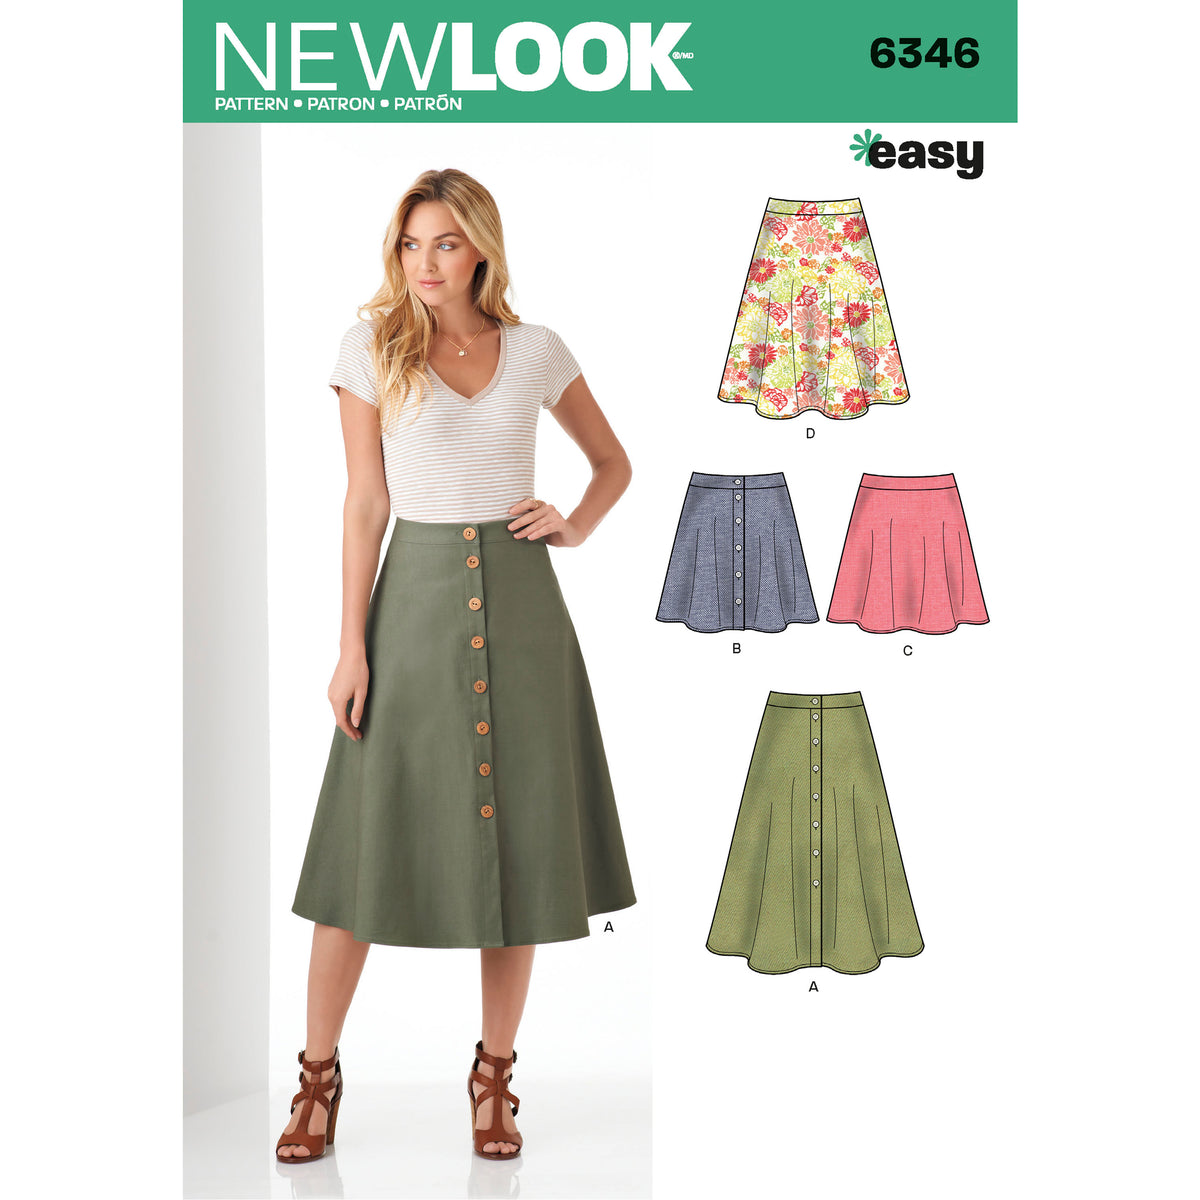 New Look Sewing Pattern 6346 - Pound Fabrics